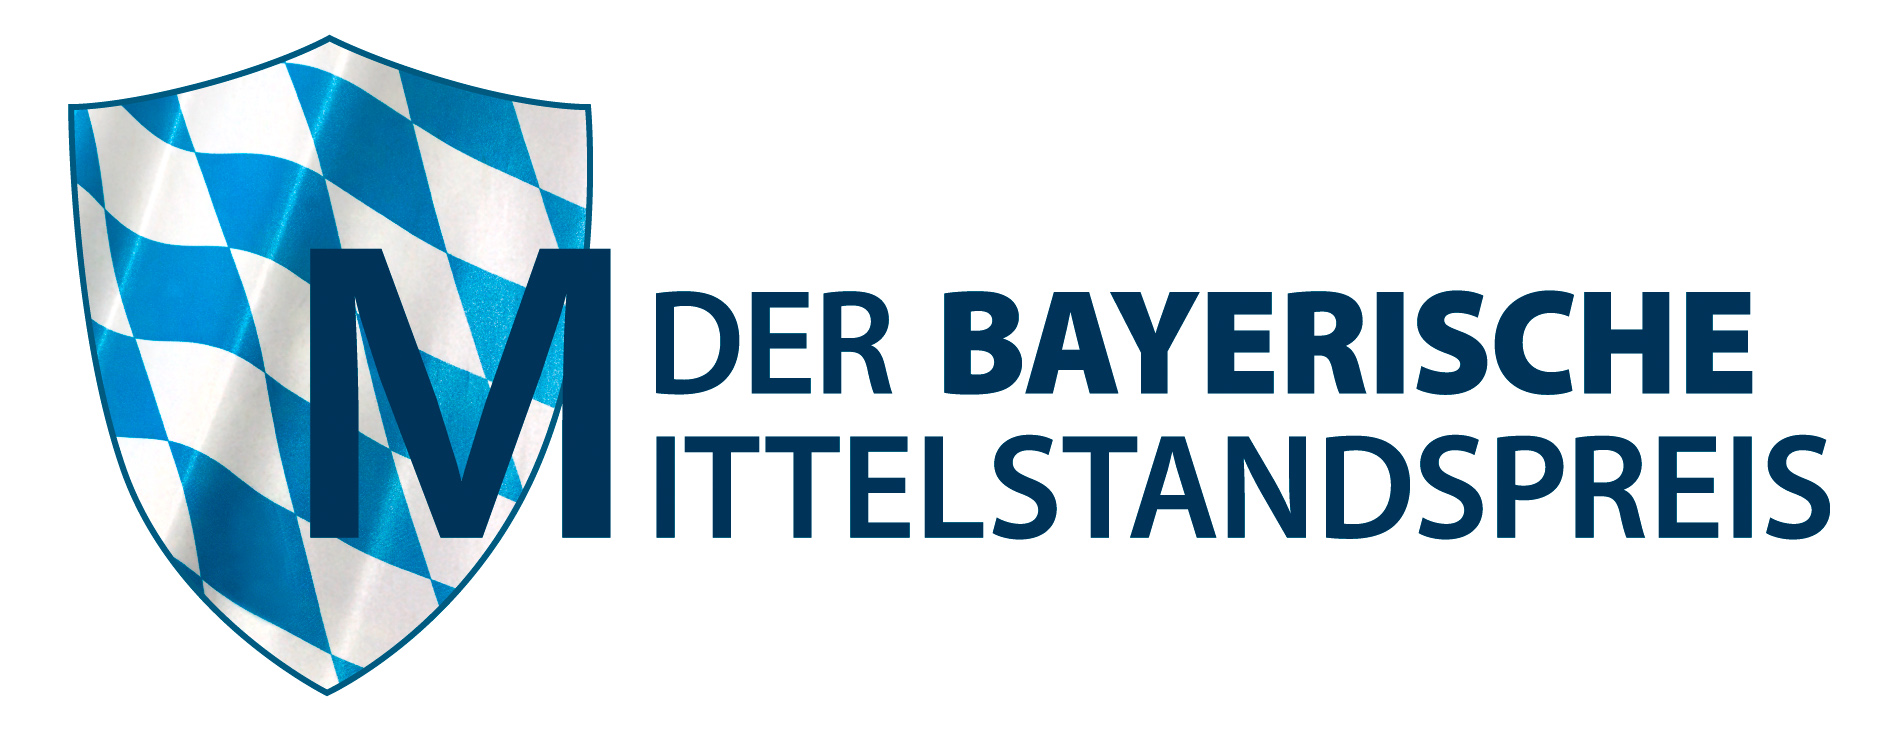 Der BAYERISCHE MITTELSTANDSPREIS 2021 – Bewerbungsphase läuft